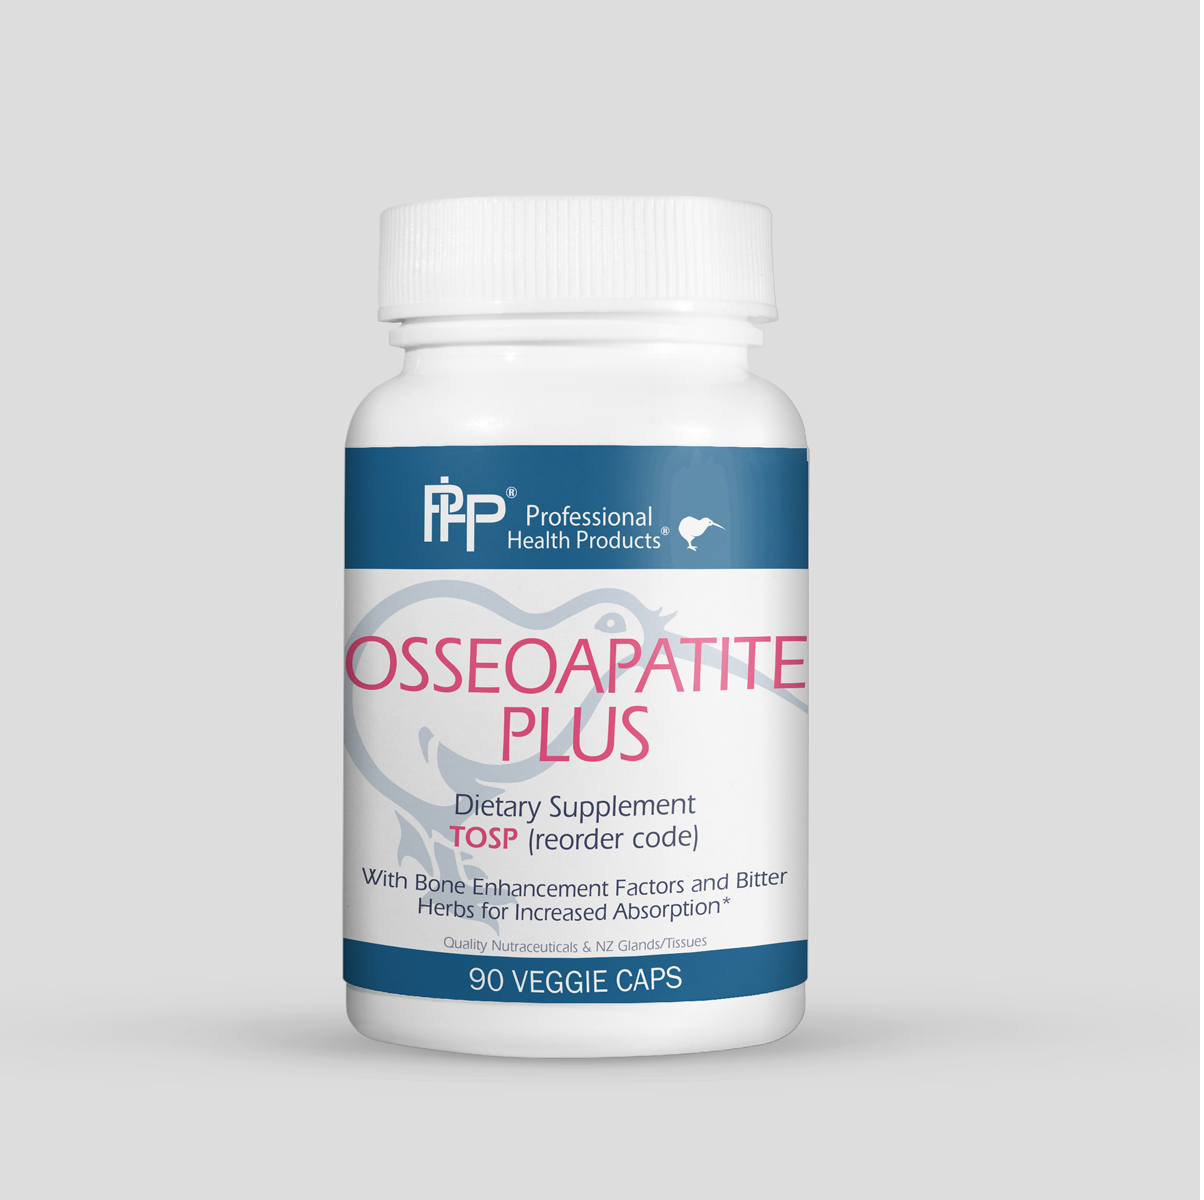 Osseoaptite Plus